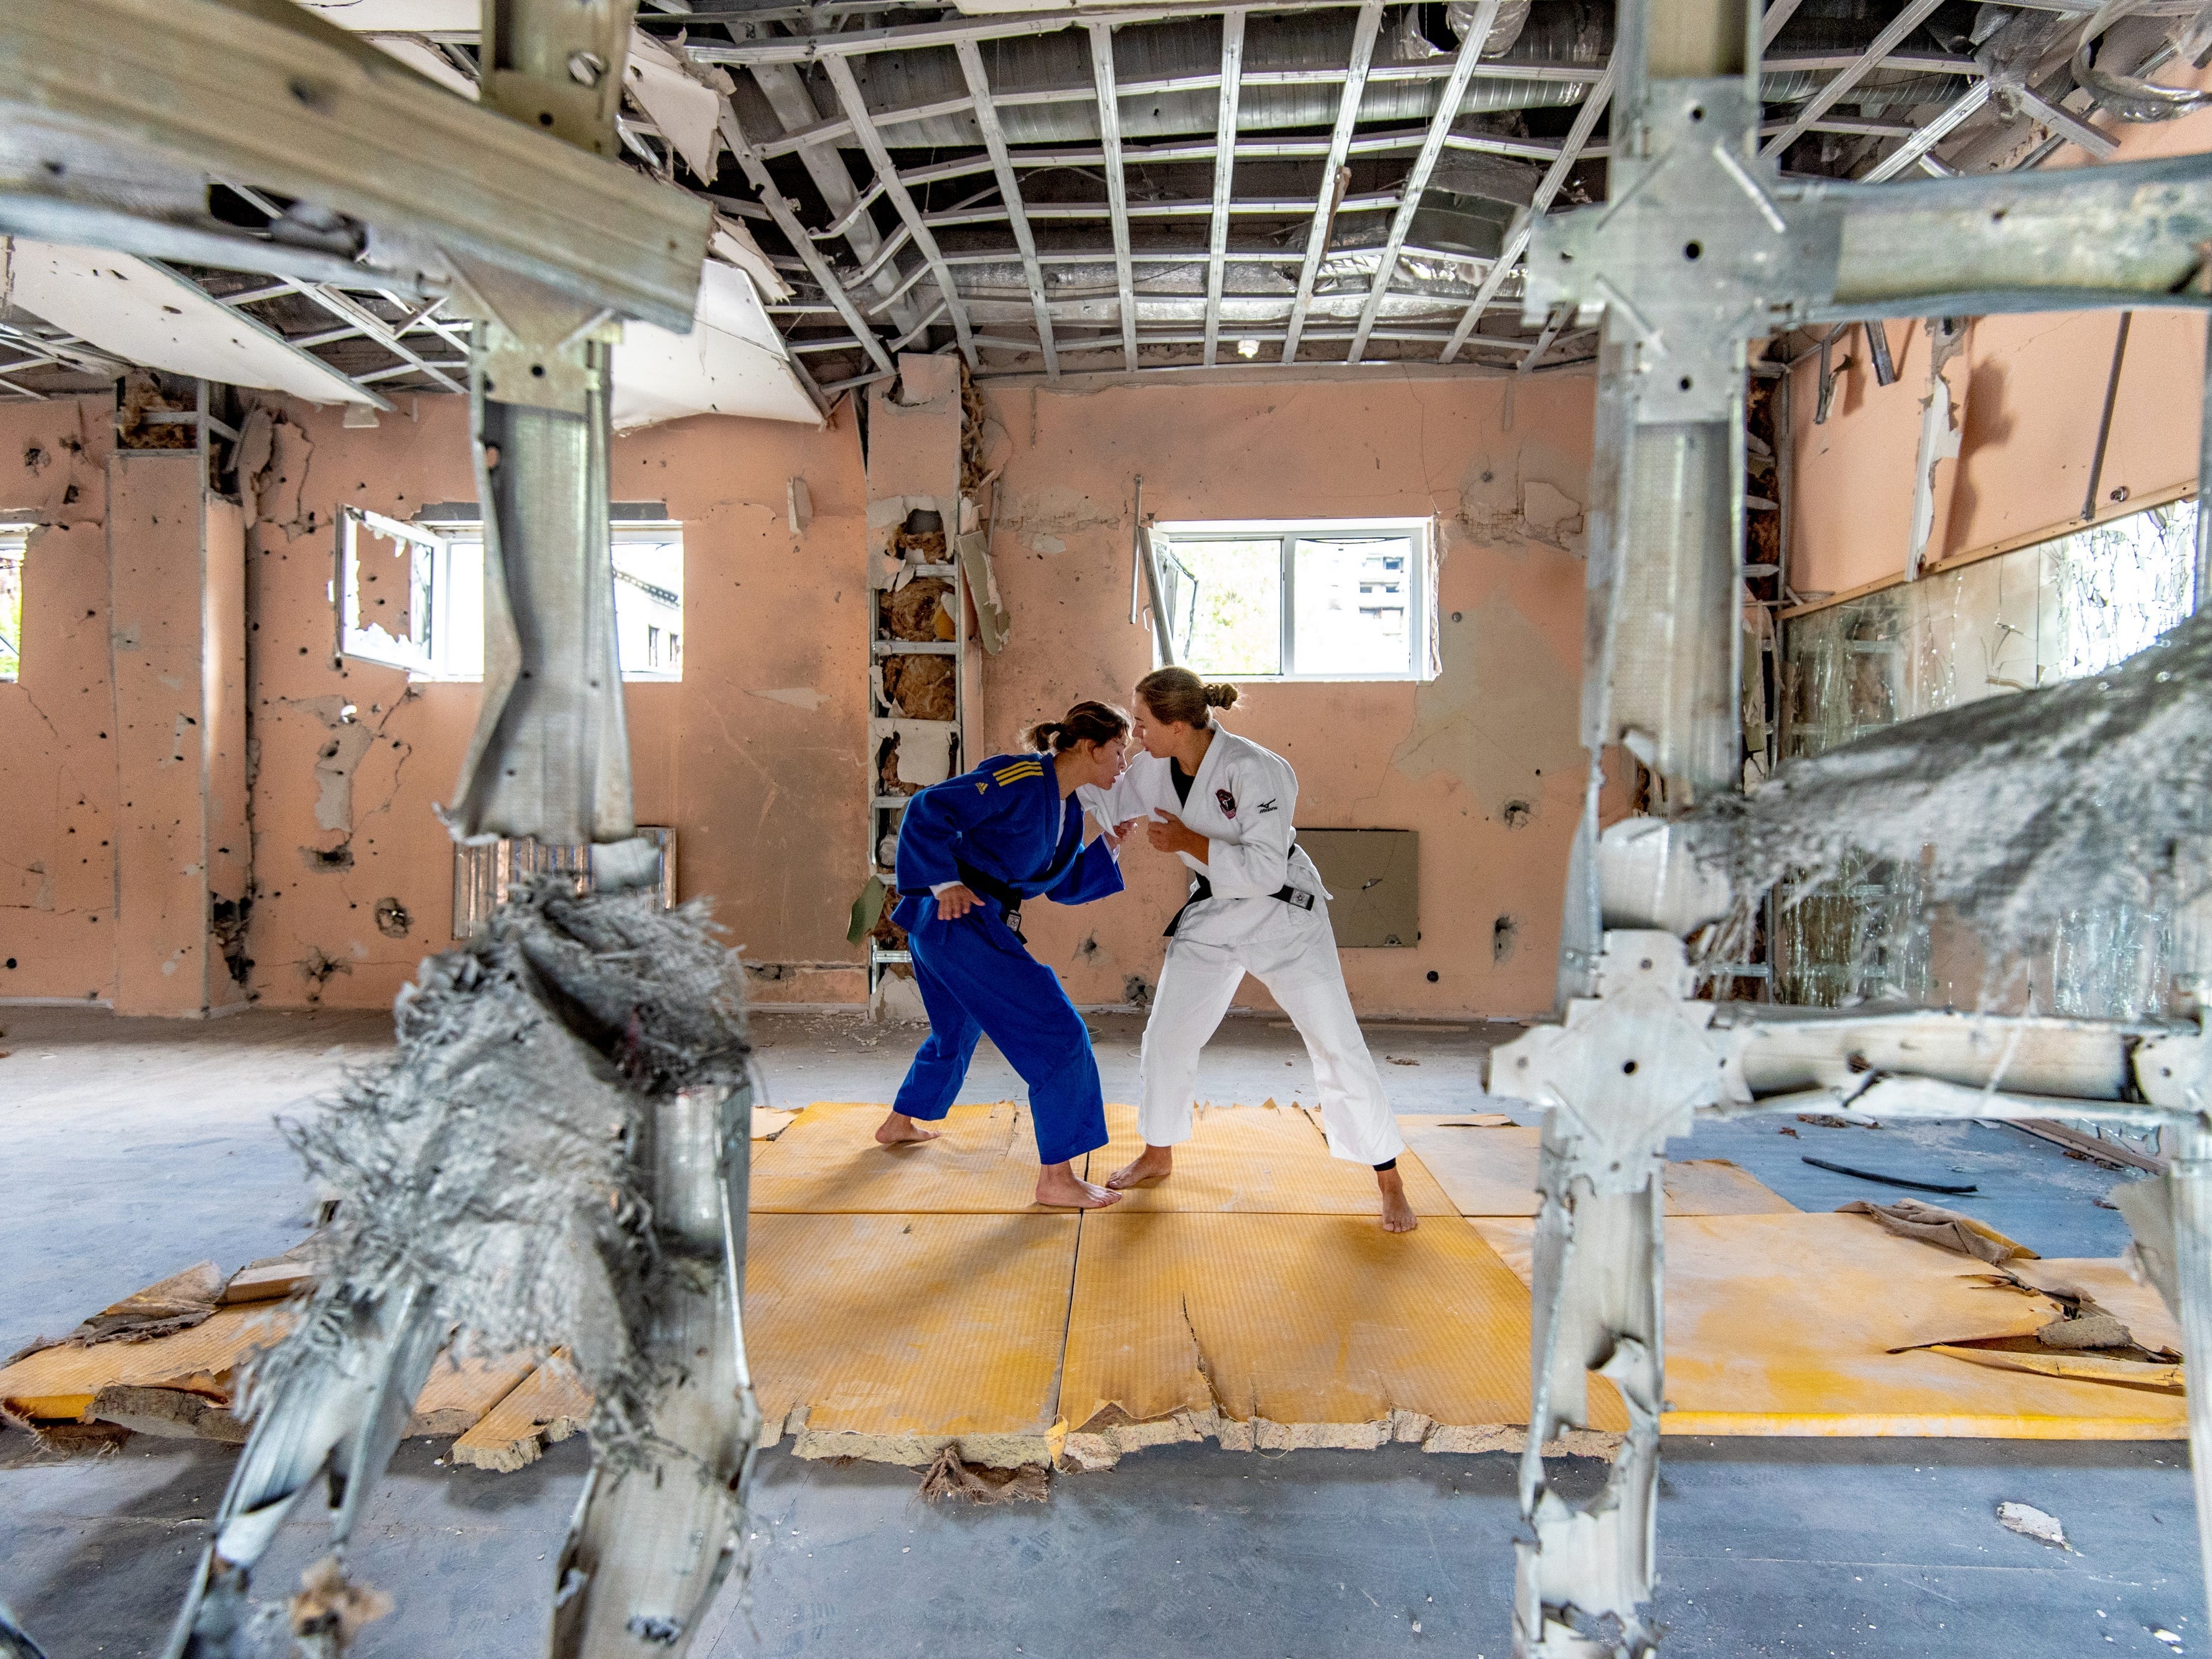 Judo-Athleten trainieren in einem Sportkomplex in der Region Kiew, der nach Beschuss zerstört wurde.